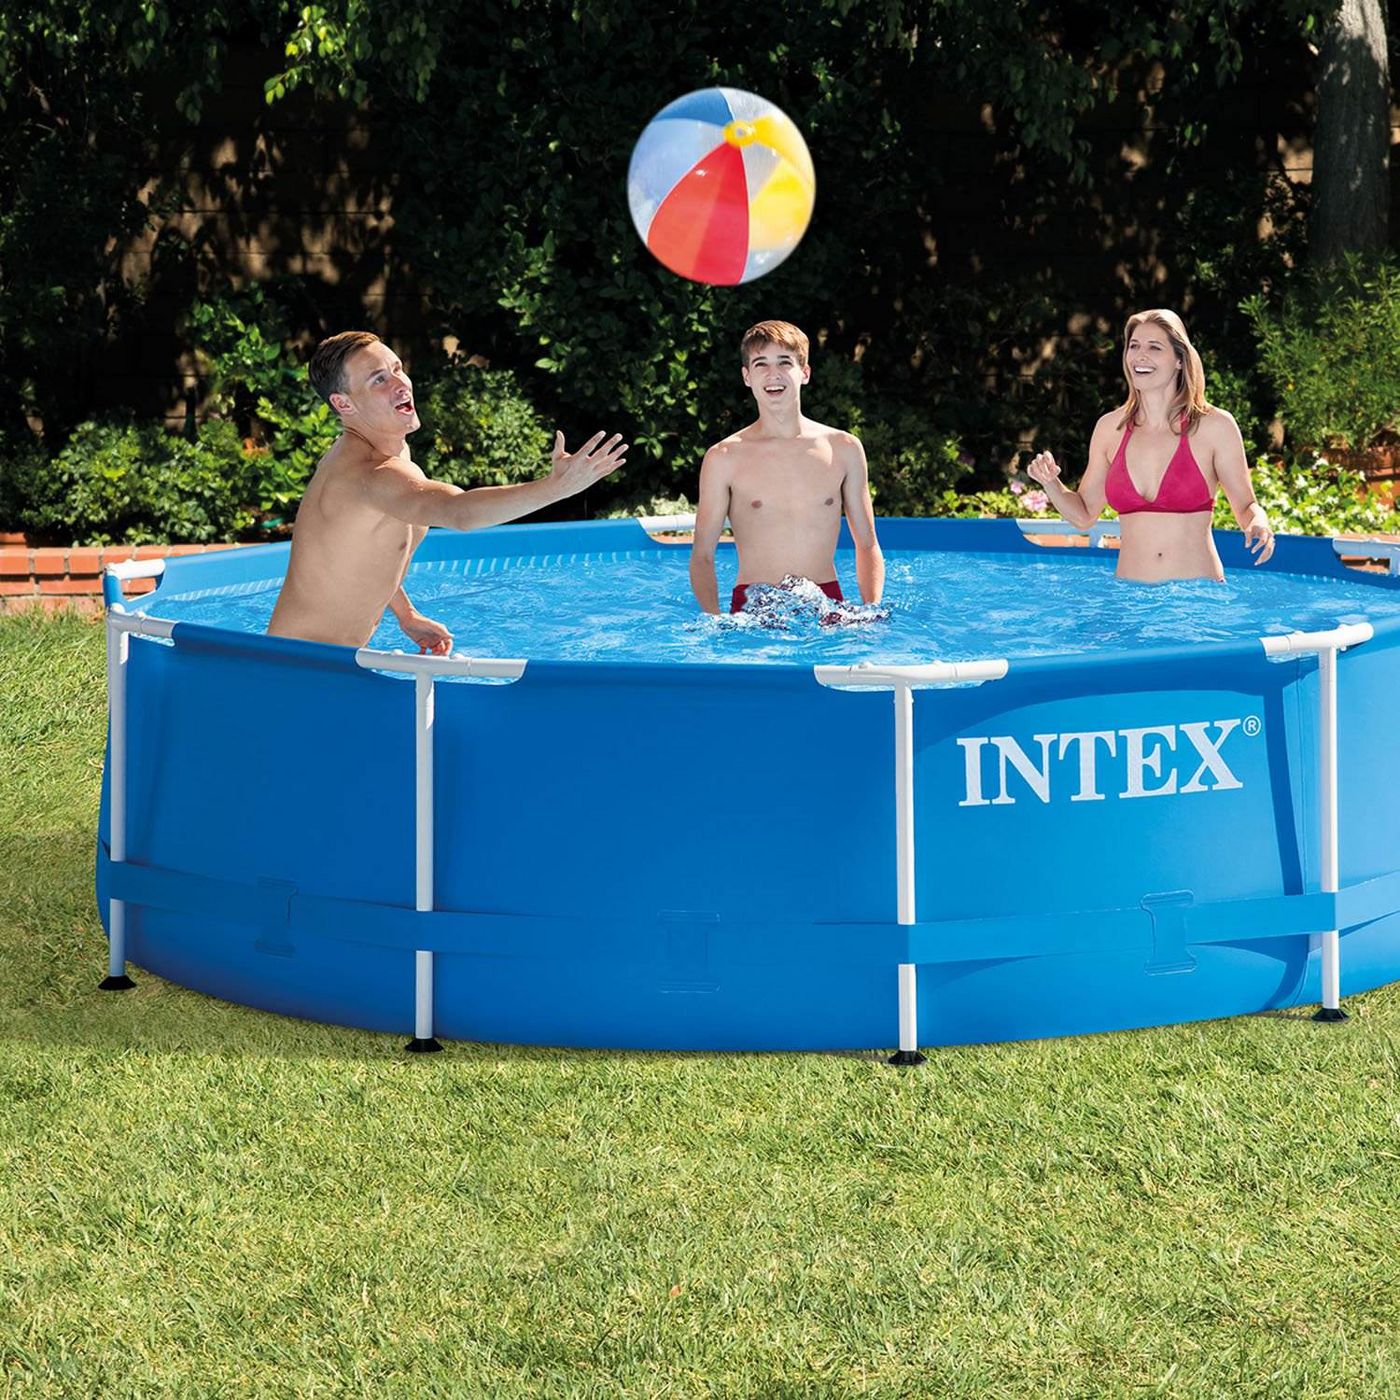 Intex 10ft x 30in Metal Frame Swimming Pool Set w/ Filter Pump & Debris Cover - image 3 of 6